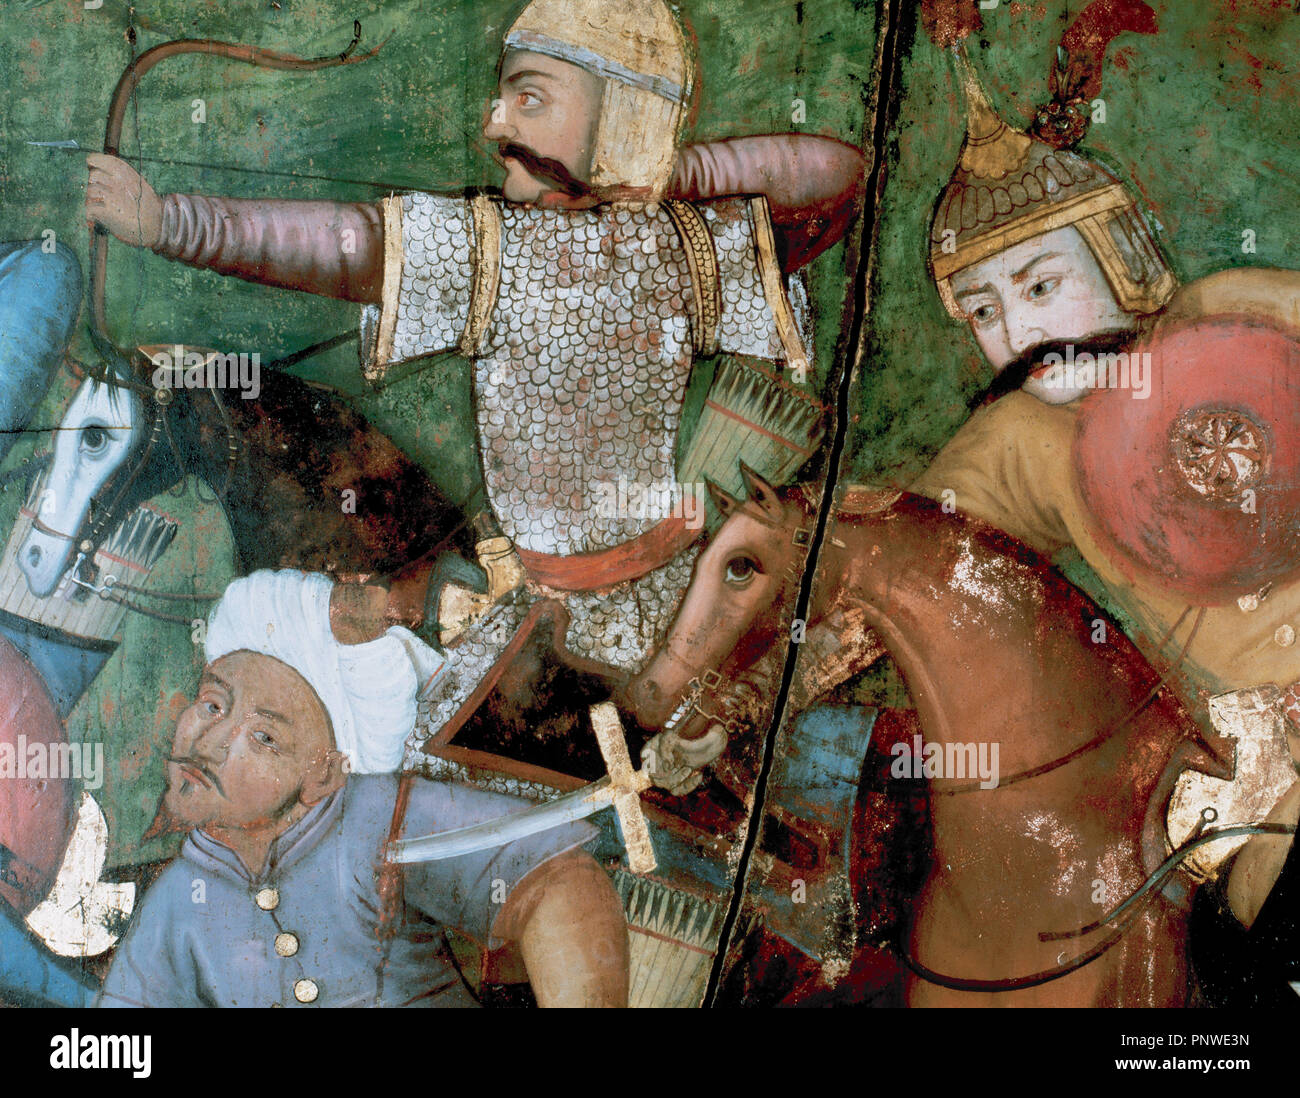 Abbas I il Grande (1571-1629). Shah della dinastia Safavid. Persiano soldati di cavalleria guidato da Shah Abbas I 'grandi' la lotta contro i Turchi. Affresco. Dettaglio. Il XVII secolo. Sutun Chihil Palace. Isfahan. L'Iran. Foto Stock